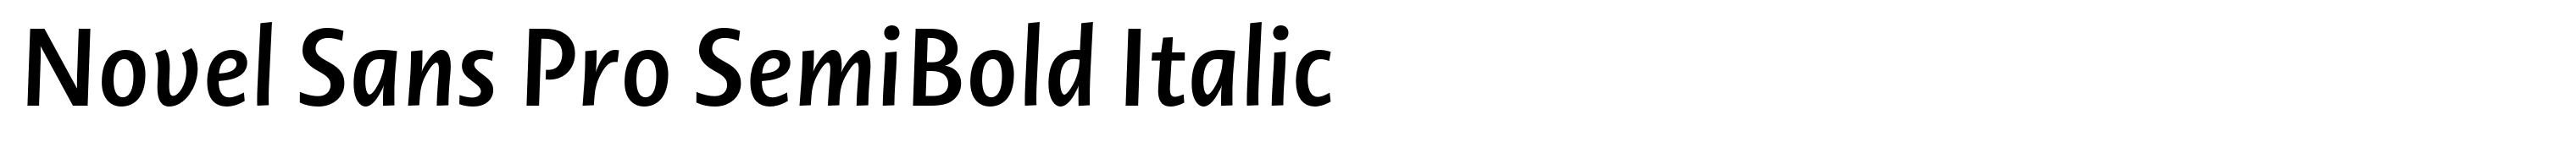 Novel Sans Pro SemiBold Italic